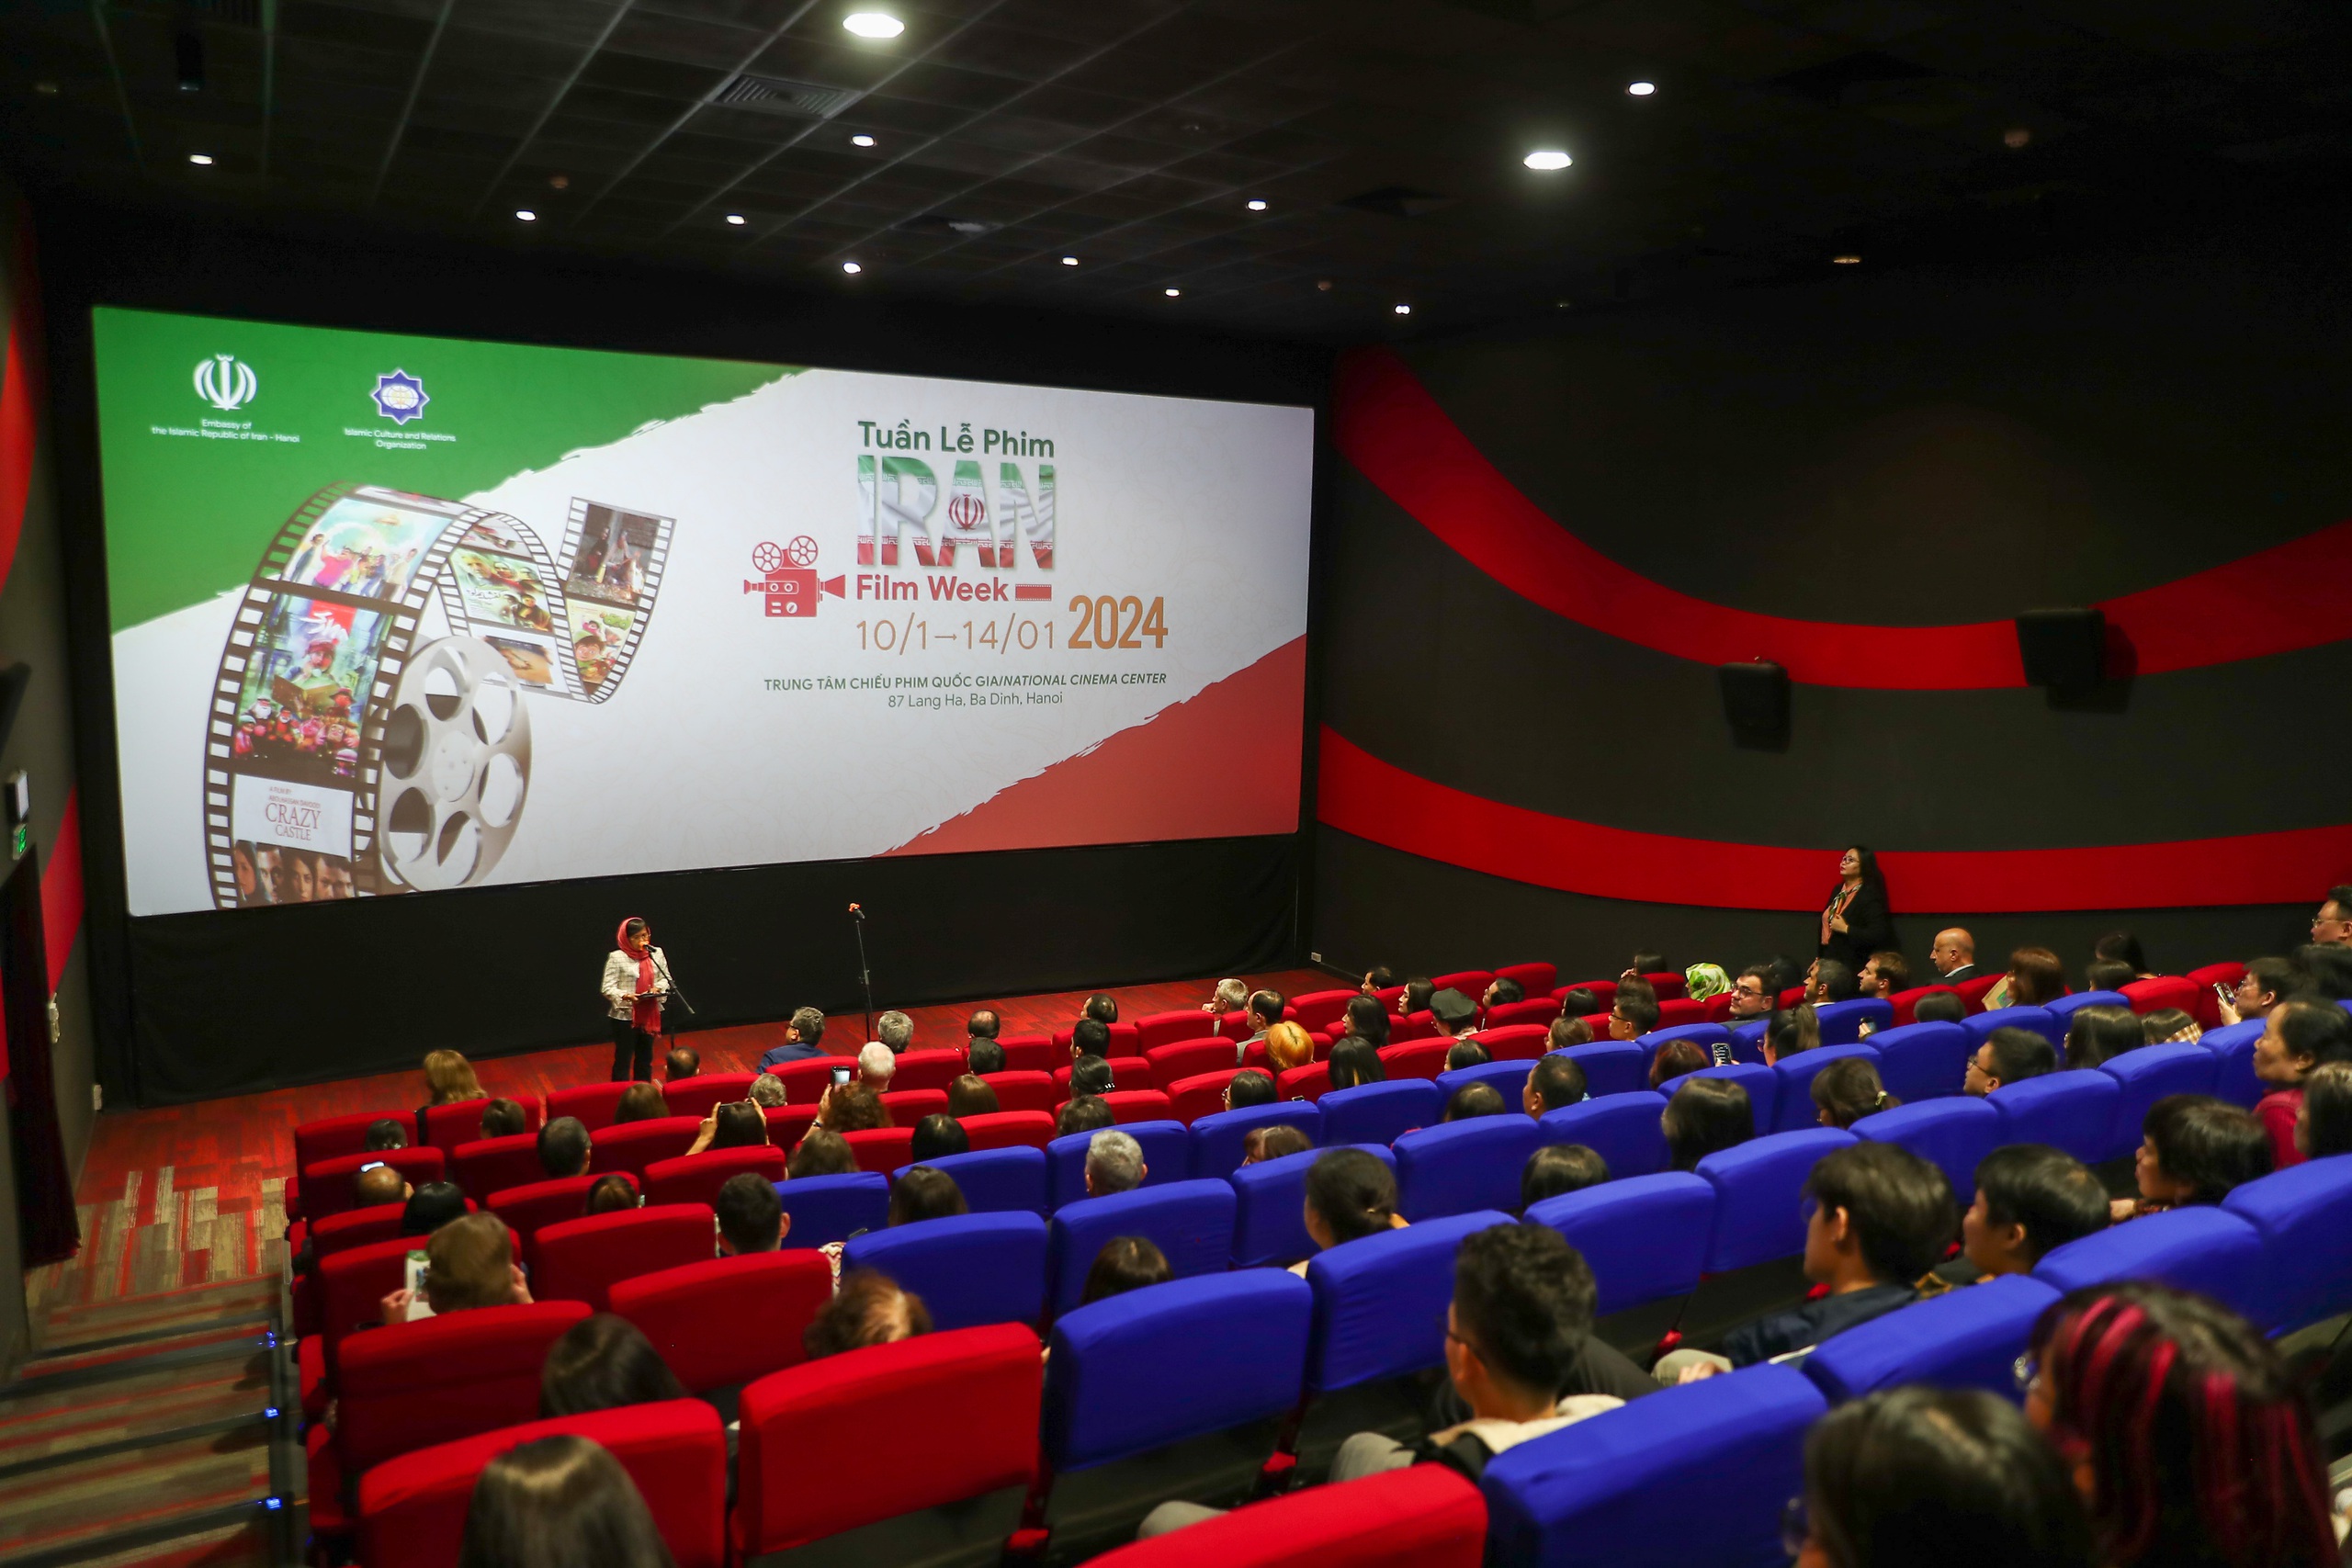 Khai mạc tuần lễ phim Iran tại Việt Nam - Ảnh 1.